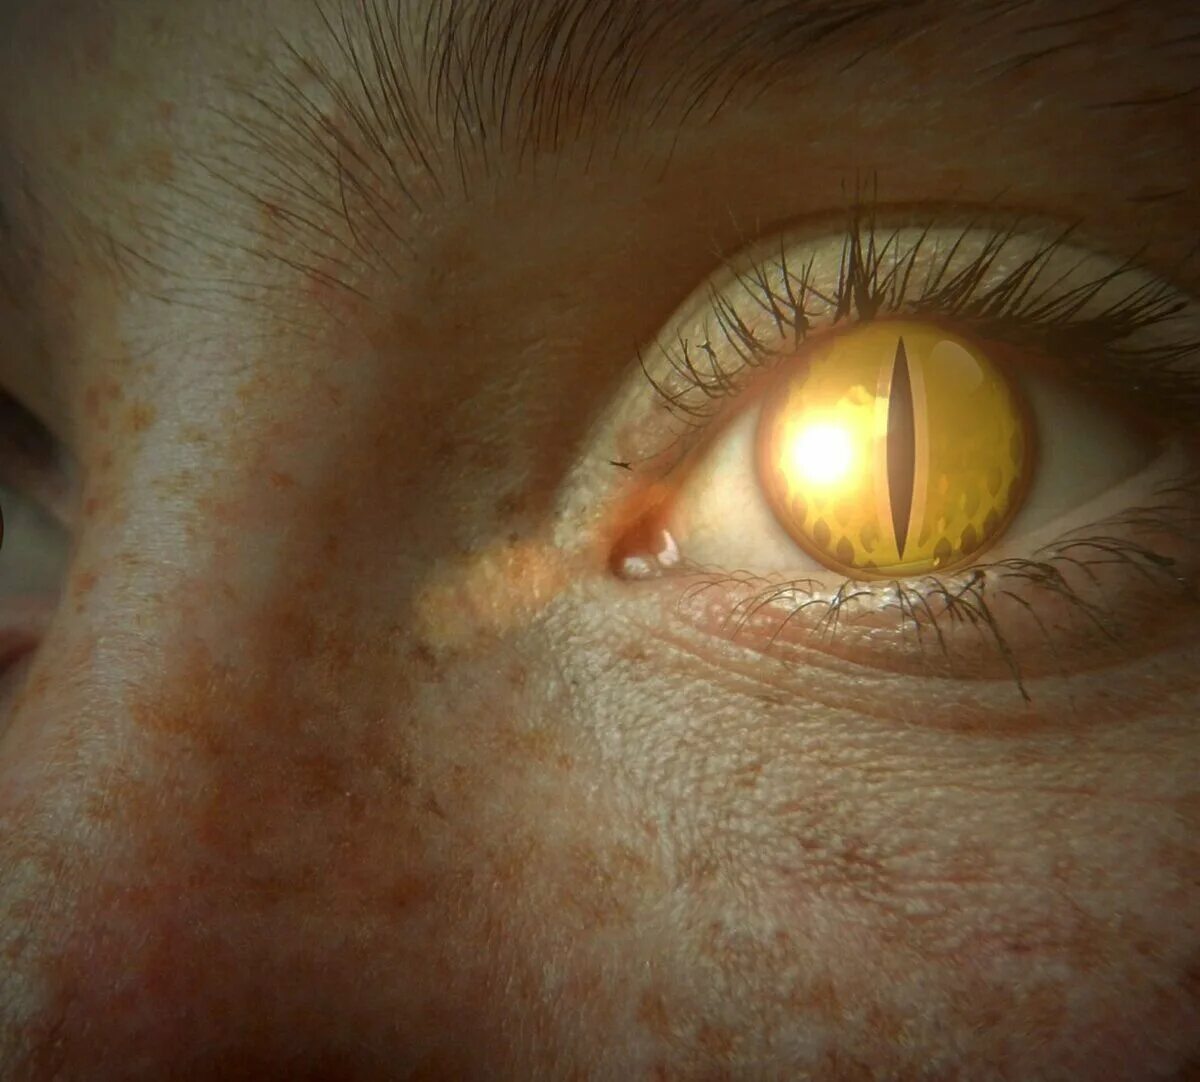 Желтый глаз 14. Желтые глаза. Глаз человека. Желто янтарные глаза. Желтые глаза с вертикальным зрачком.